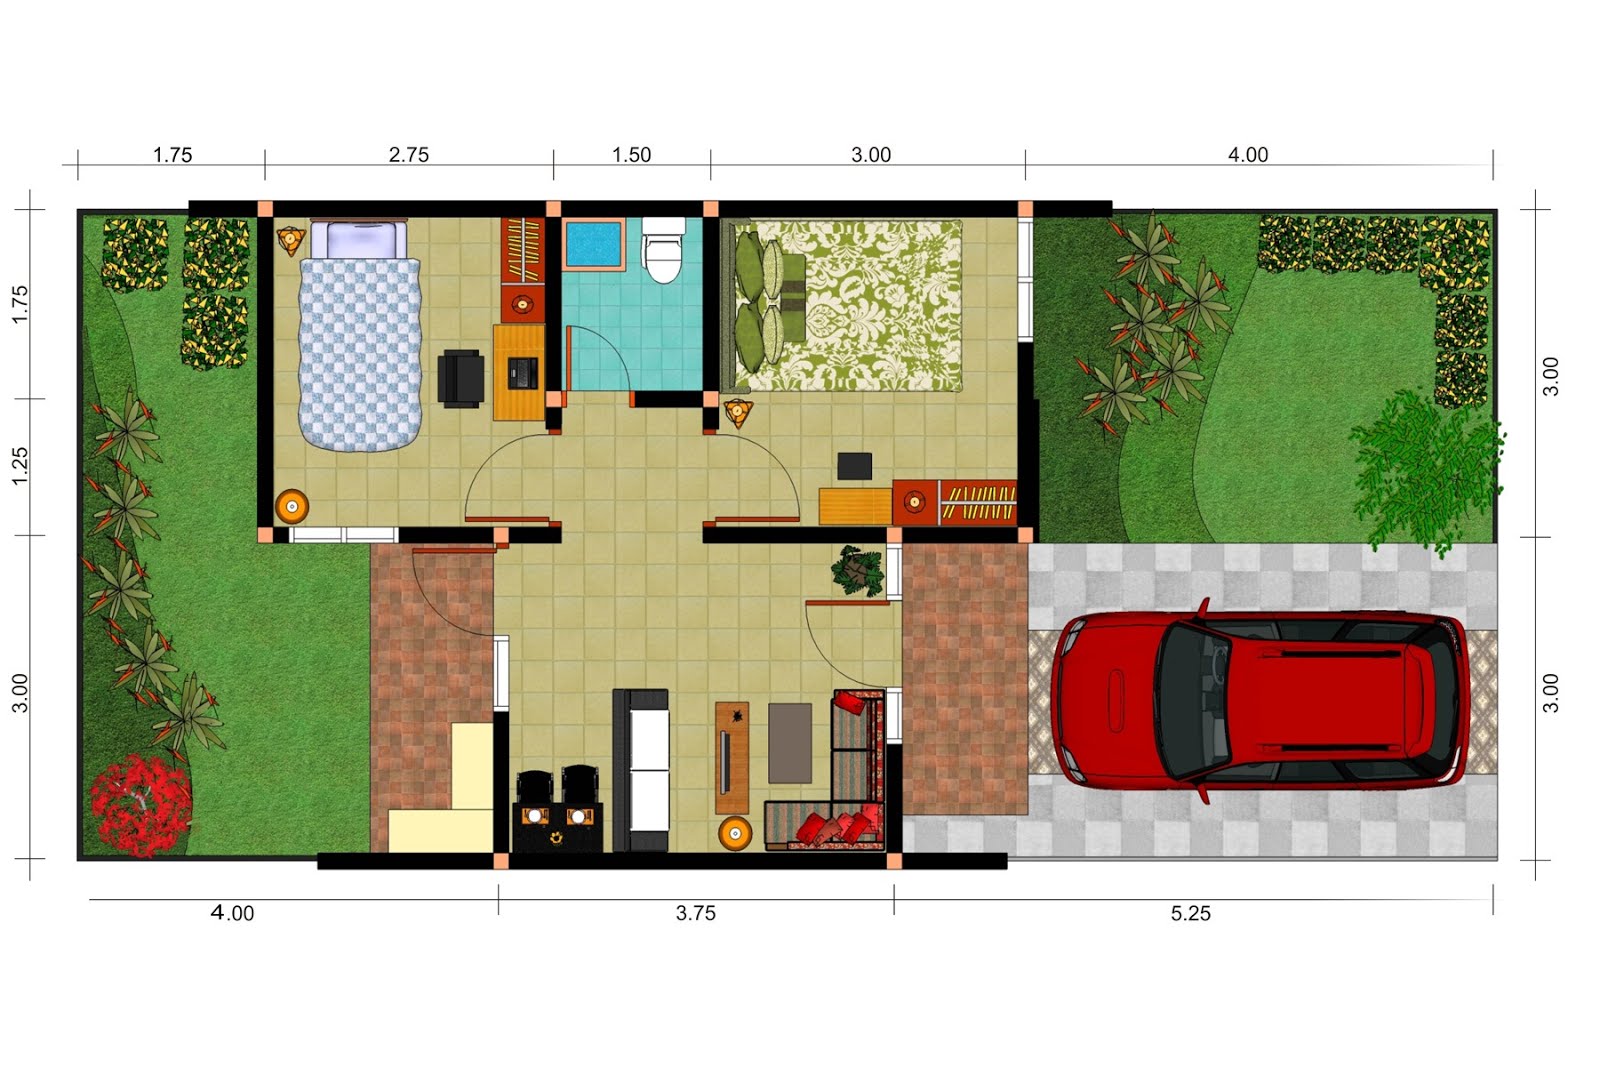 Denah/Sketsa Rumah Minimalis + Gambar  Model Desain Rumah 